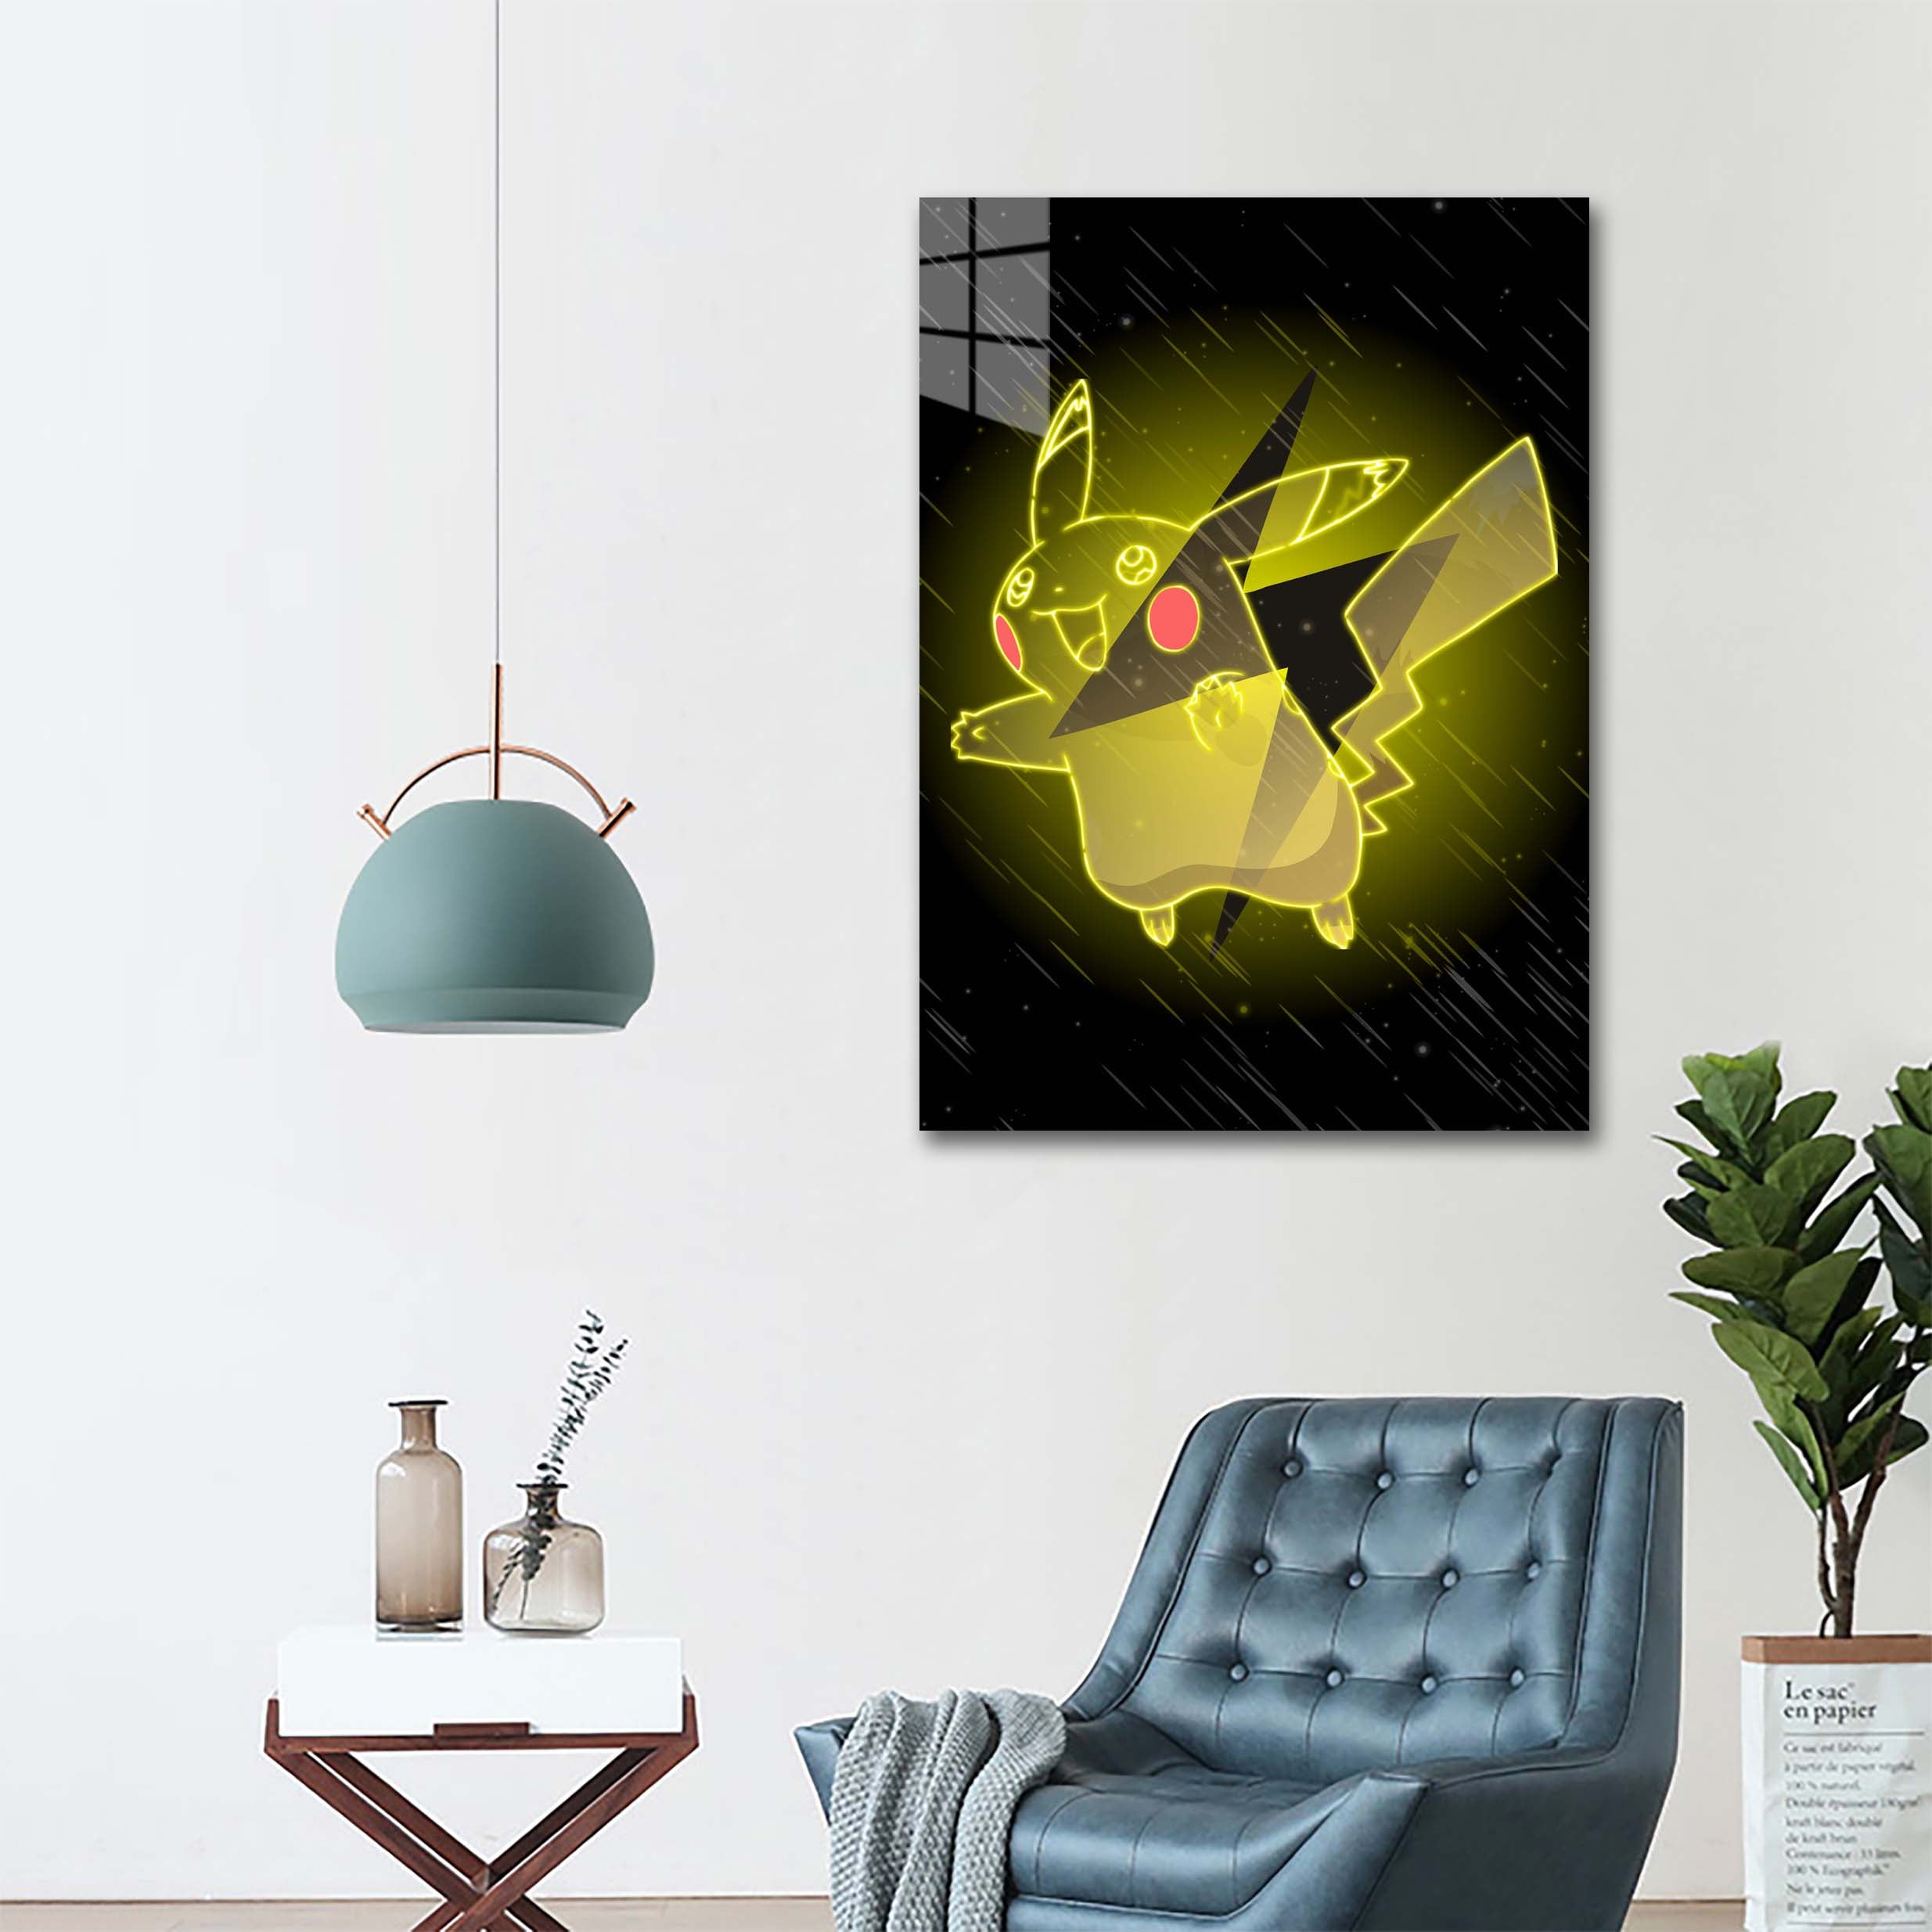 Partner Pikachu-designed by @UDWorks